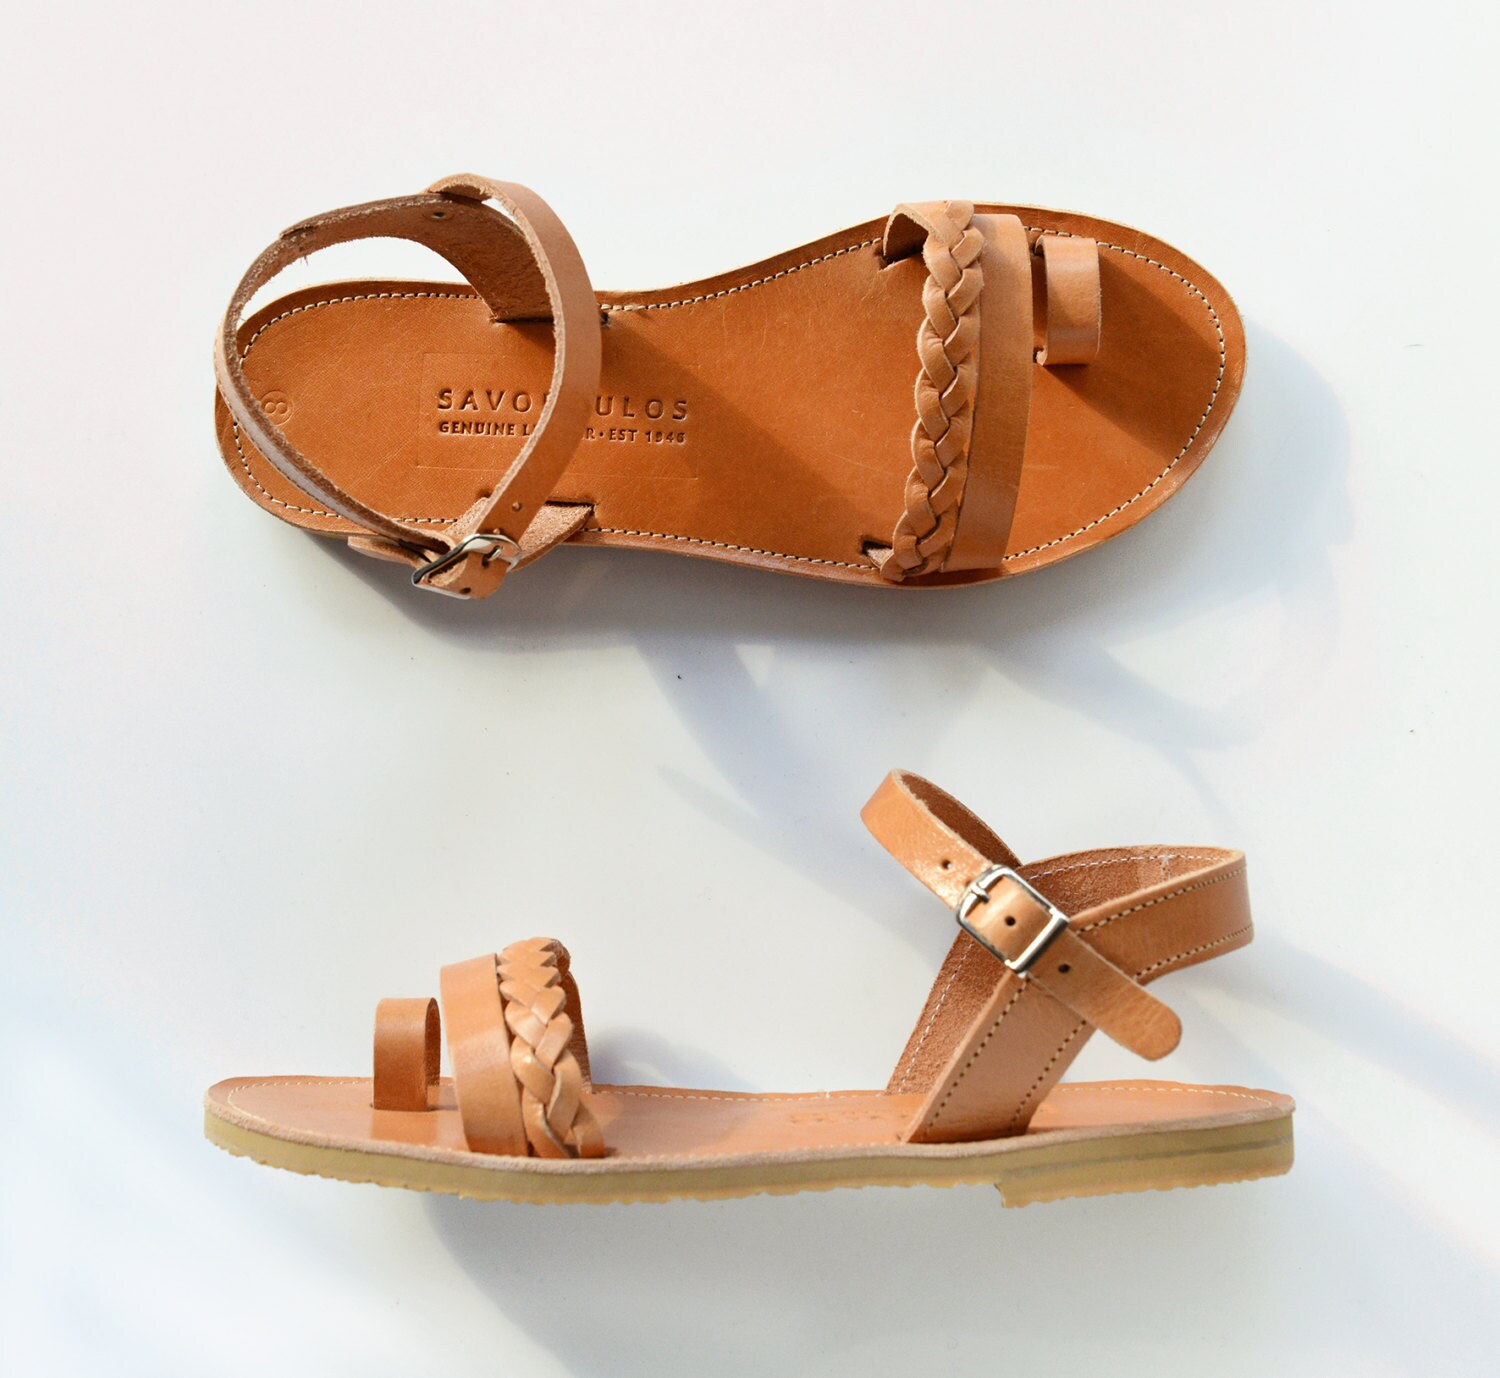 Greek sandals Gladiator sandals Leather sandals Sandals | Etsy